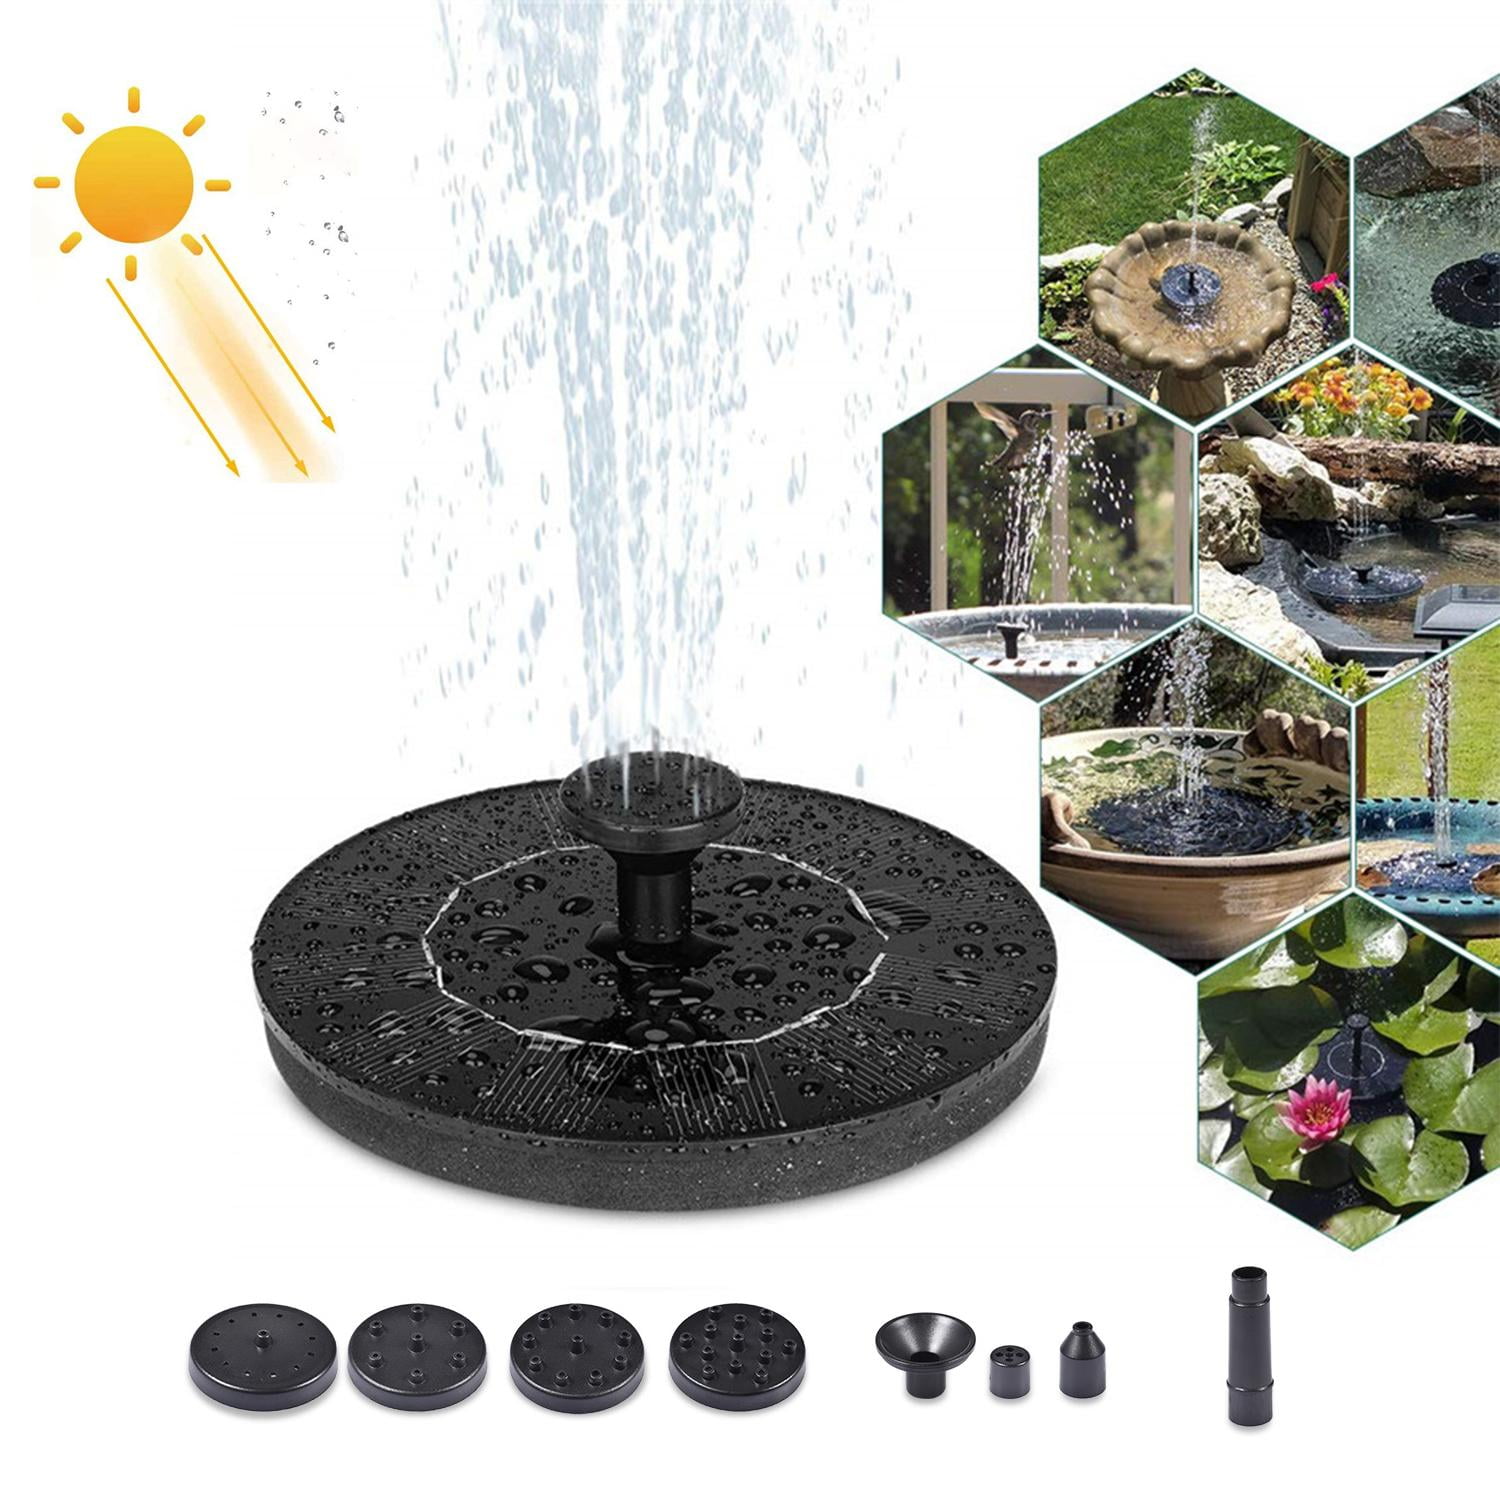 Solar Bird Bath Fountains,Mini Solar Fountain,Multi-Purpose Swimming Pools Fountain with 7 Different Nozzles